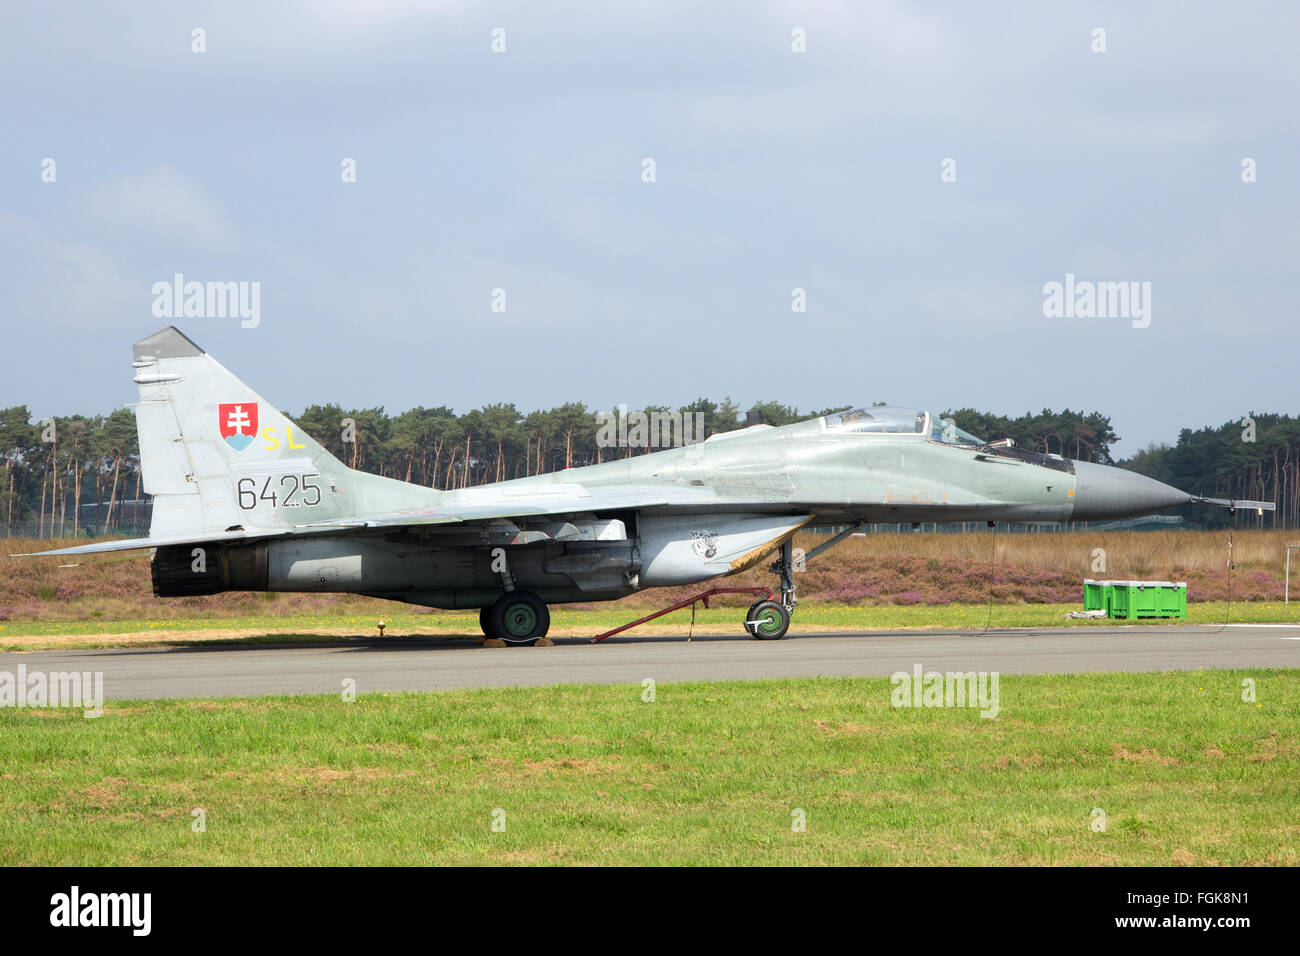 La Slovaquie Air Force en avion de chasse MiG-29 sur le tarmac de la base aérienne de Kleine Brogel. Banque D'Images